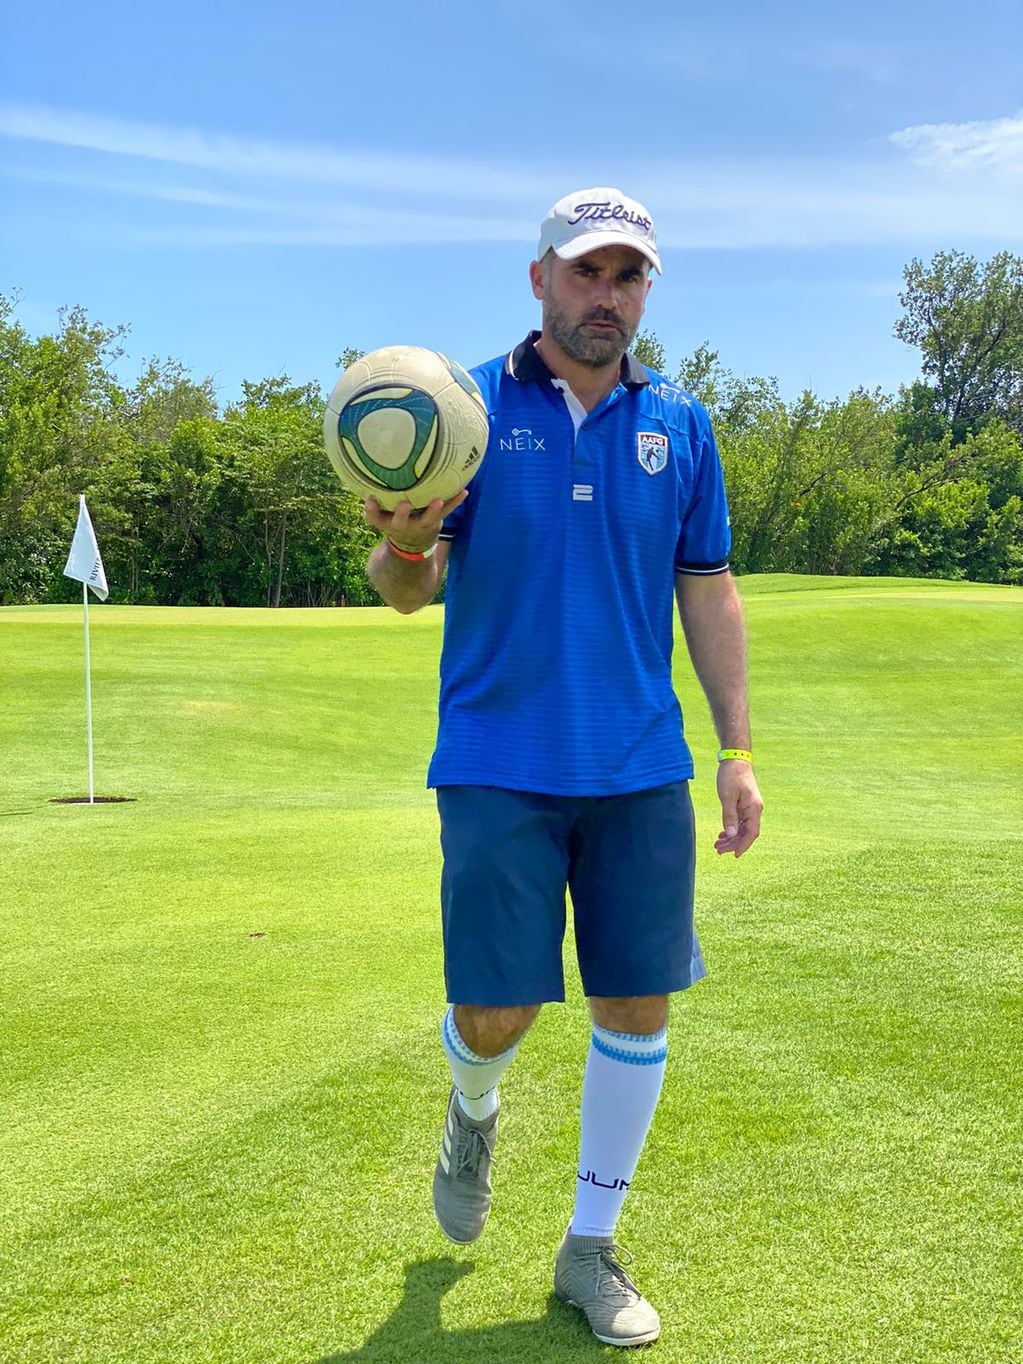 Mario Barrón, el cordobés que jugará el Mundial de footgolf